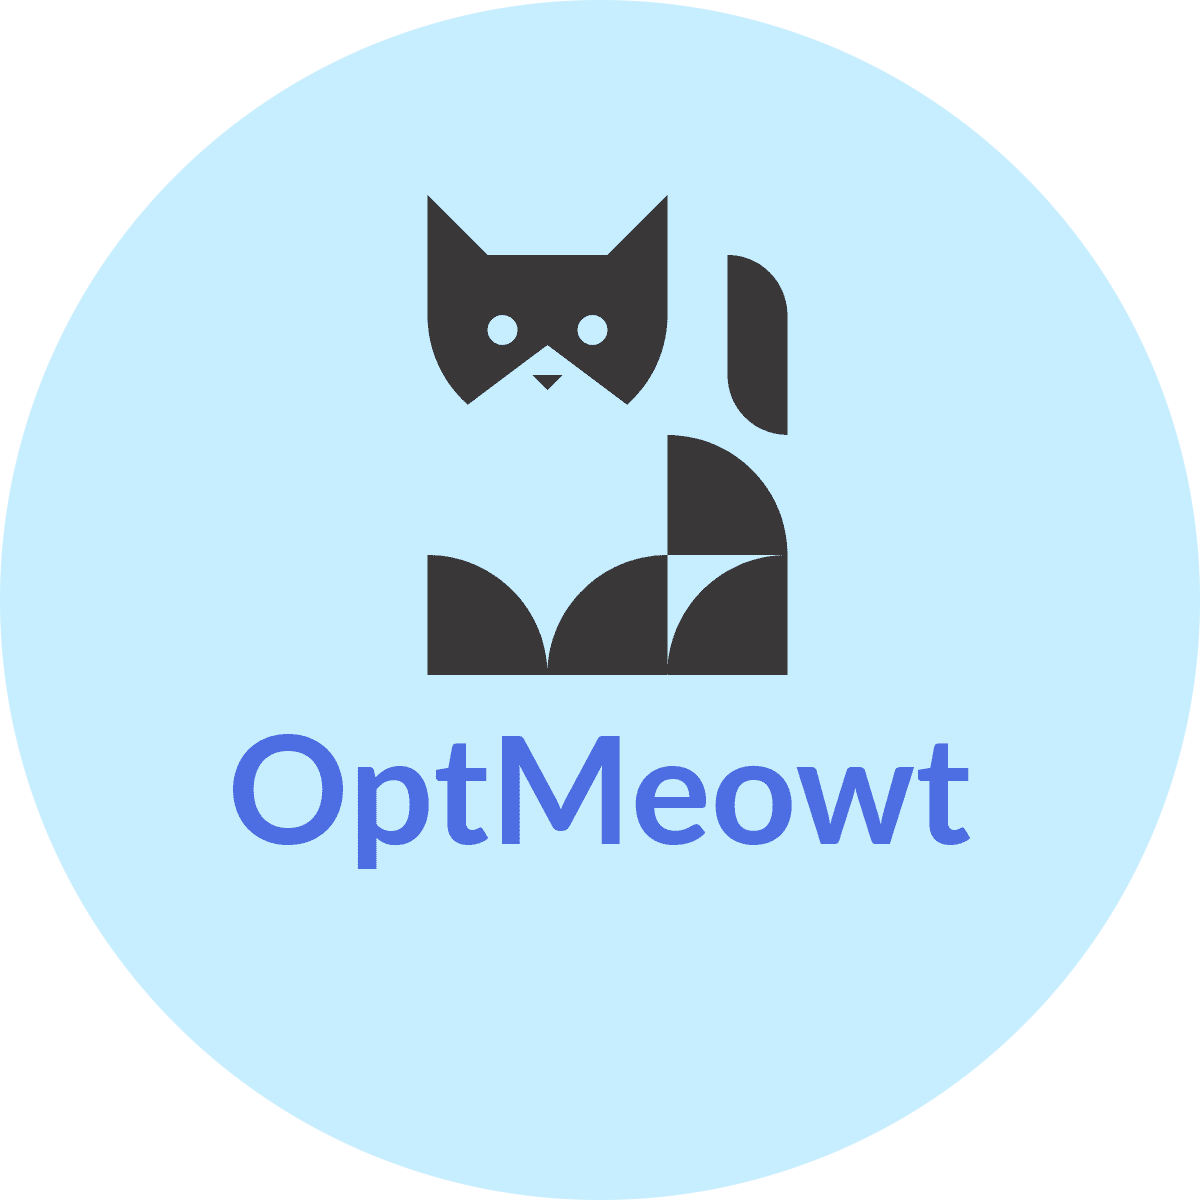 OptMeowt logo